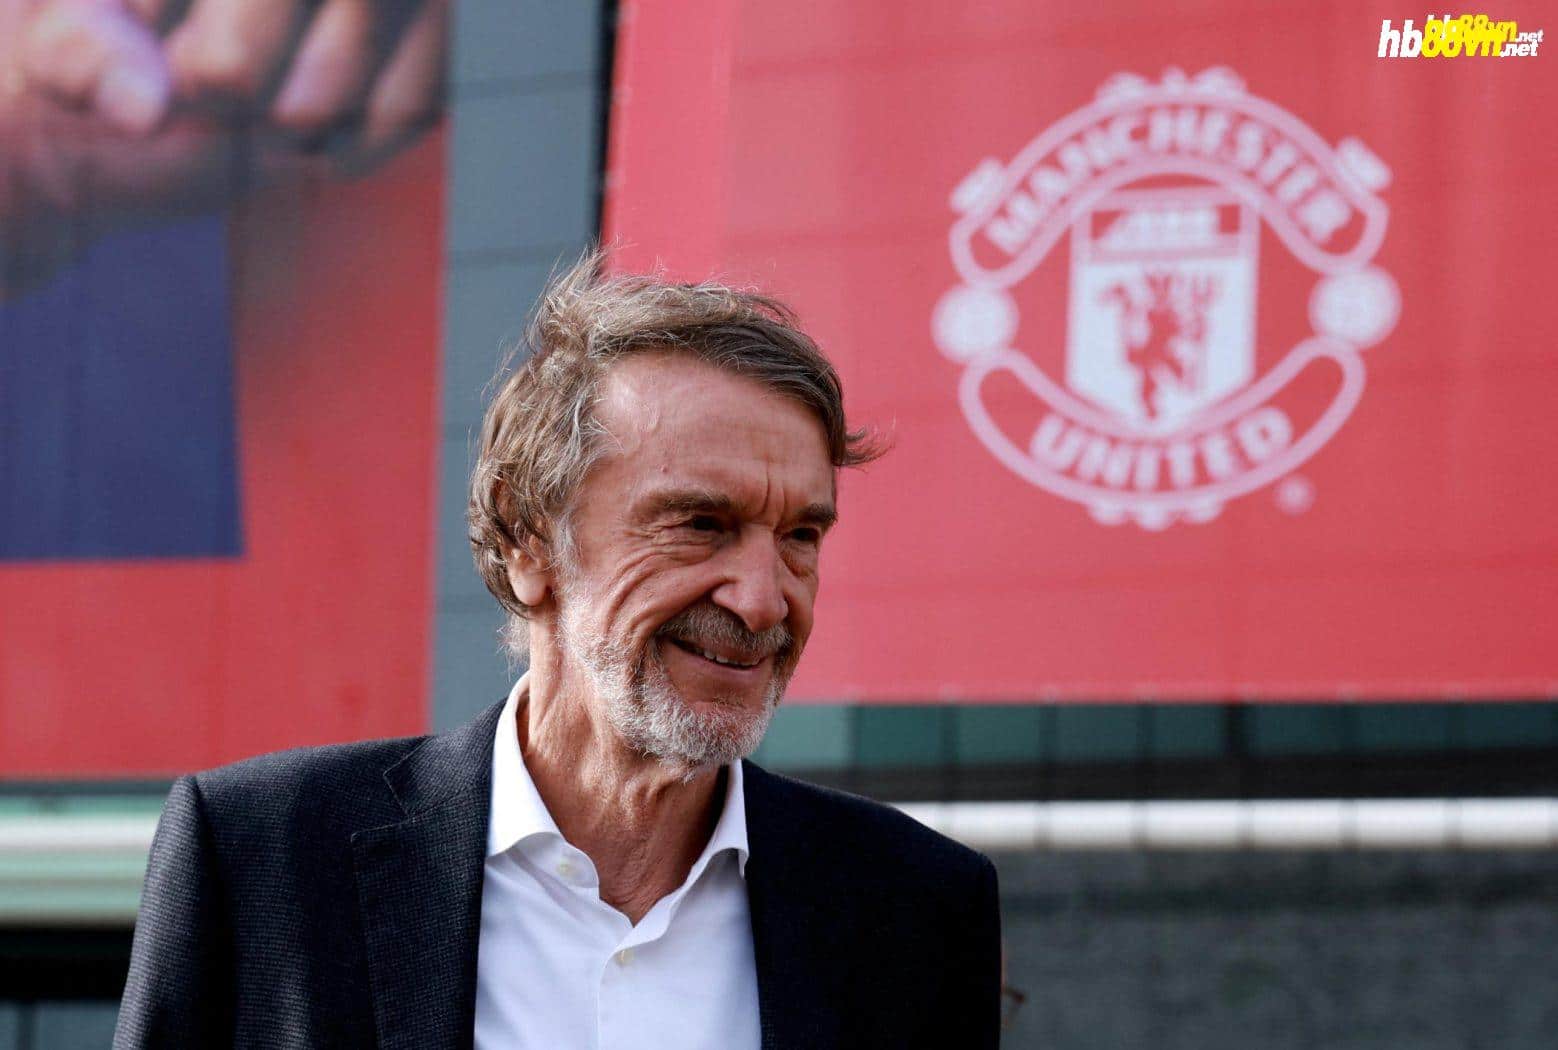 Ratcliffe đến thăm sân Old Trafford và gặp lãnh đạo Man Utd hồi tháng 3. Ảnh: Reuters